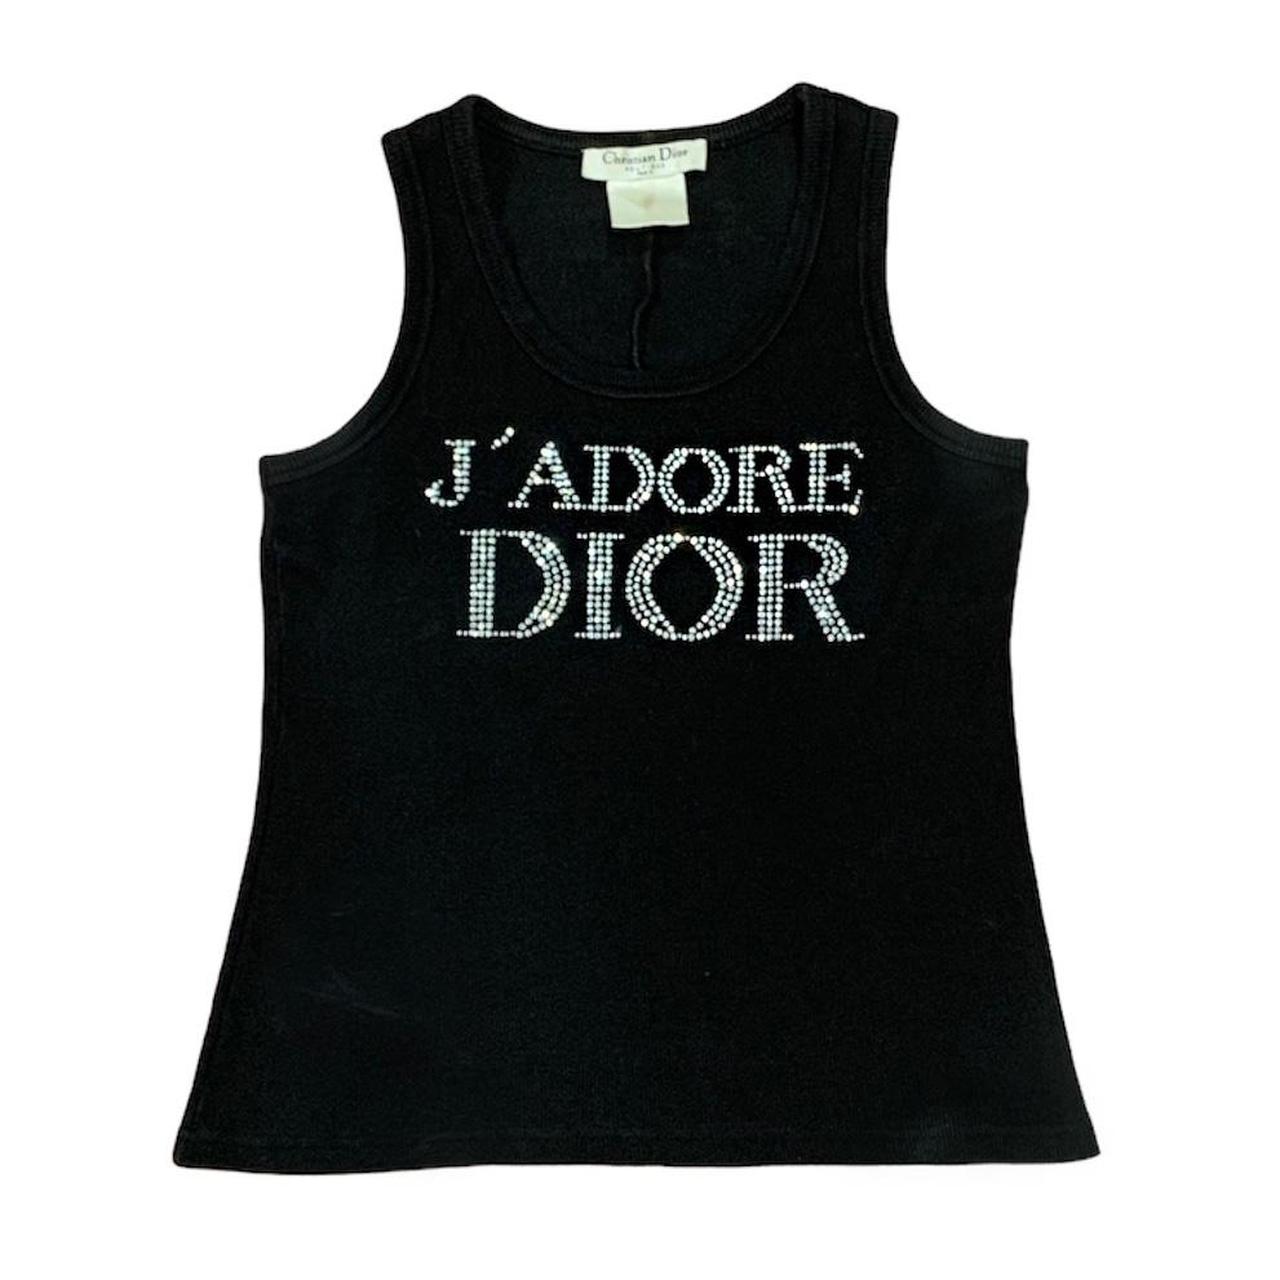 Christian Dior ‘Jadore Dior’ black rib knit tank top... - Depop